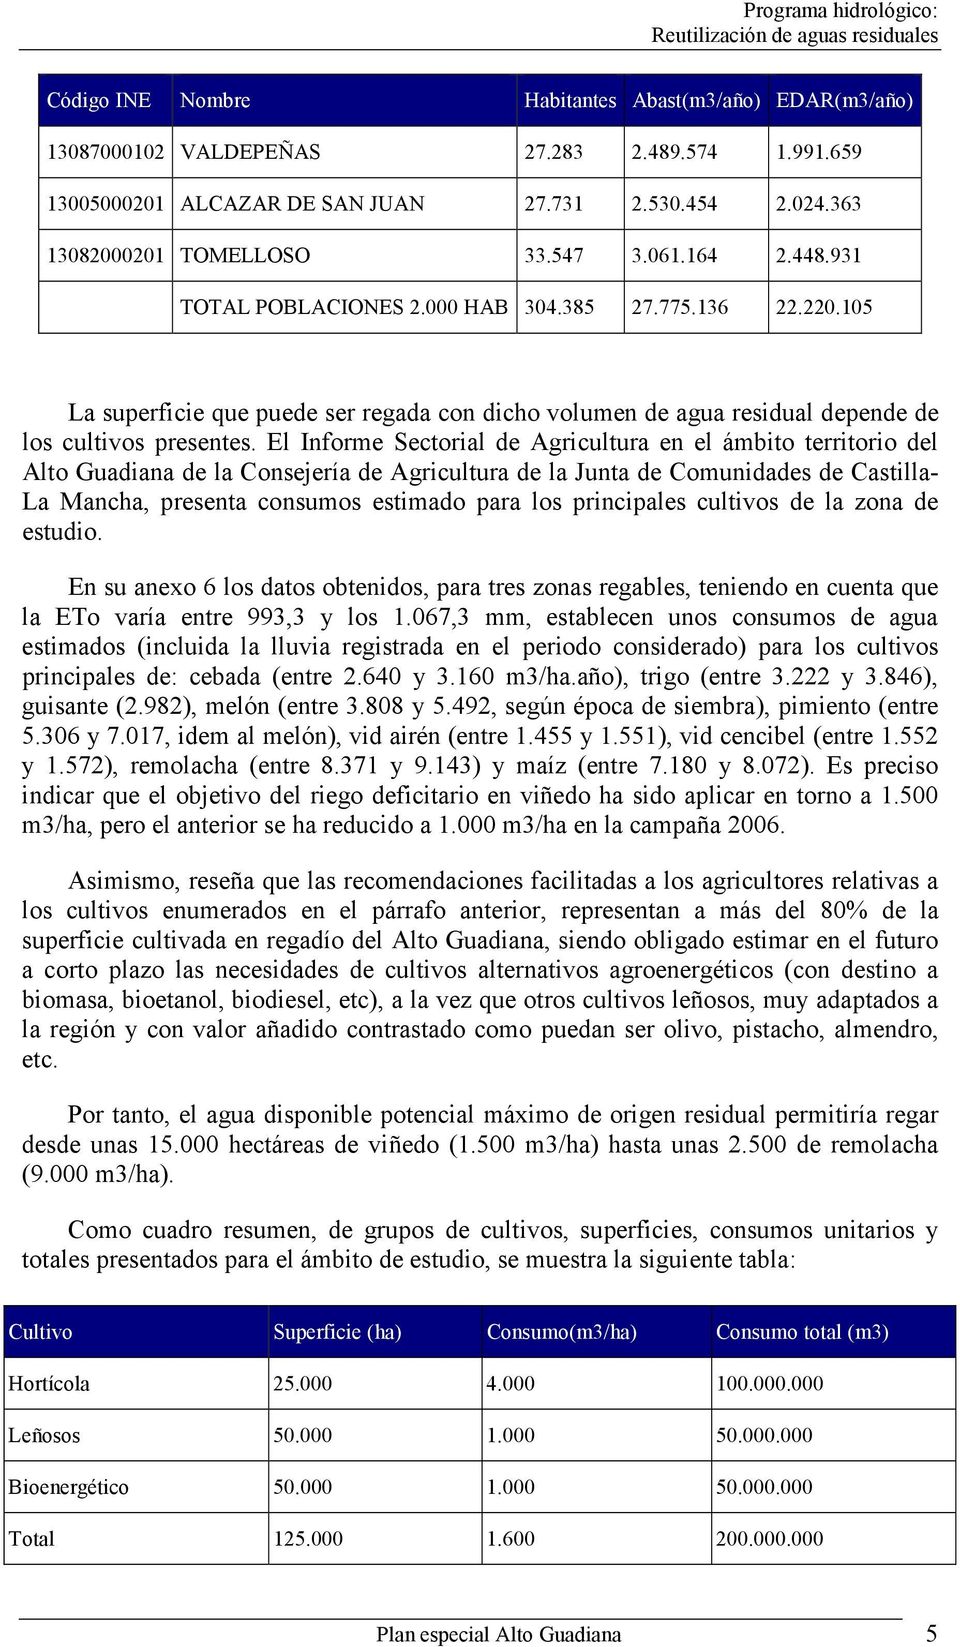 El Informe Sectorial de Agricultura en el ámbito territorio del Alto Guadiana de la Consejería de Agricultura de la Junta de Comunidades de Castilla- La Mancha, presenta consumos estimado para los